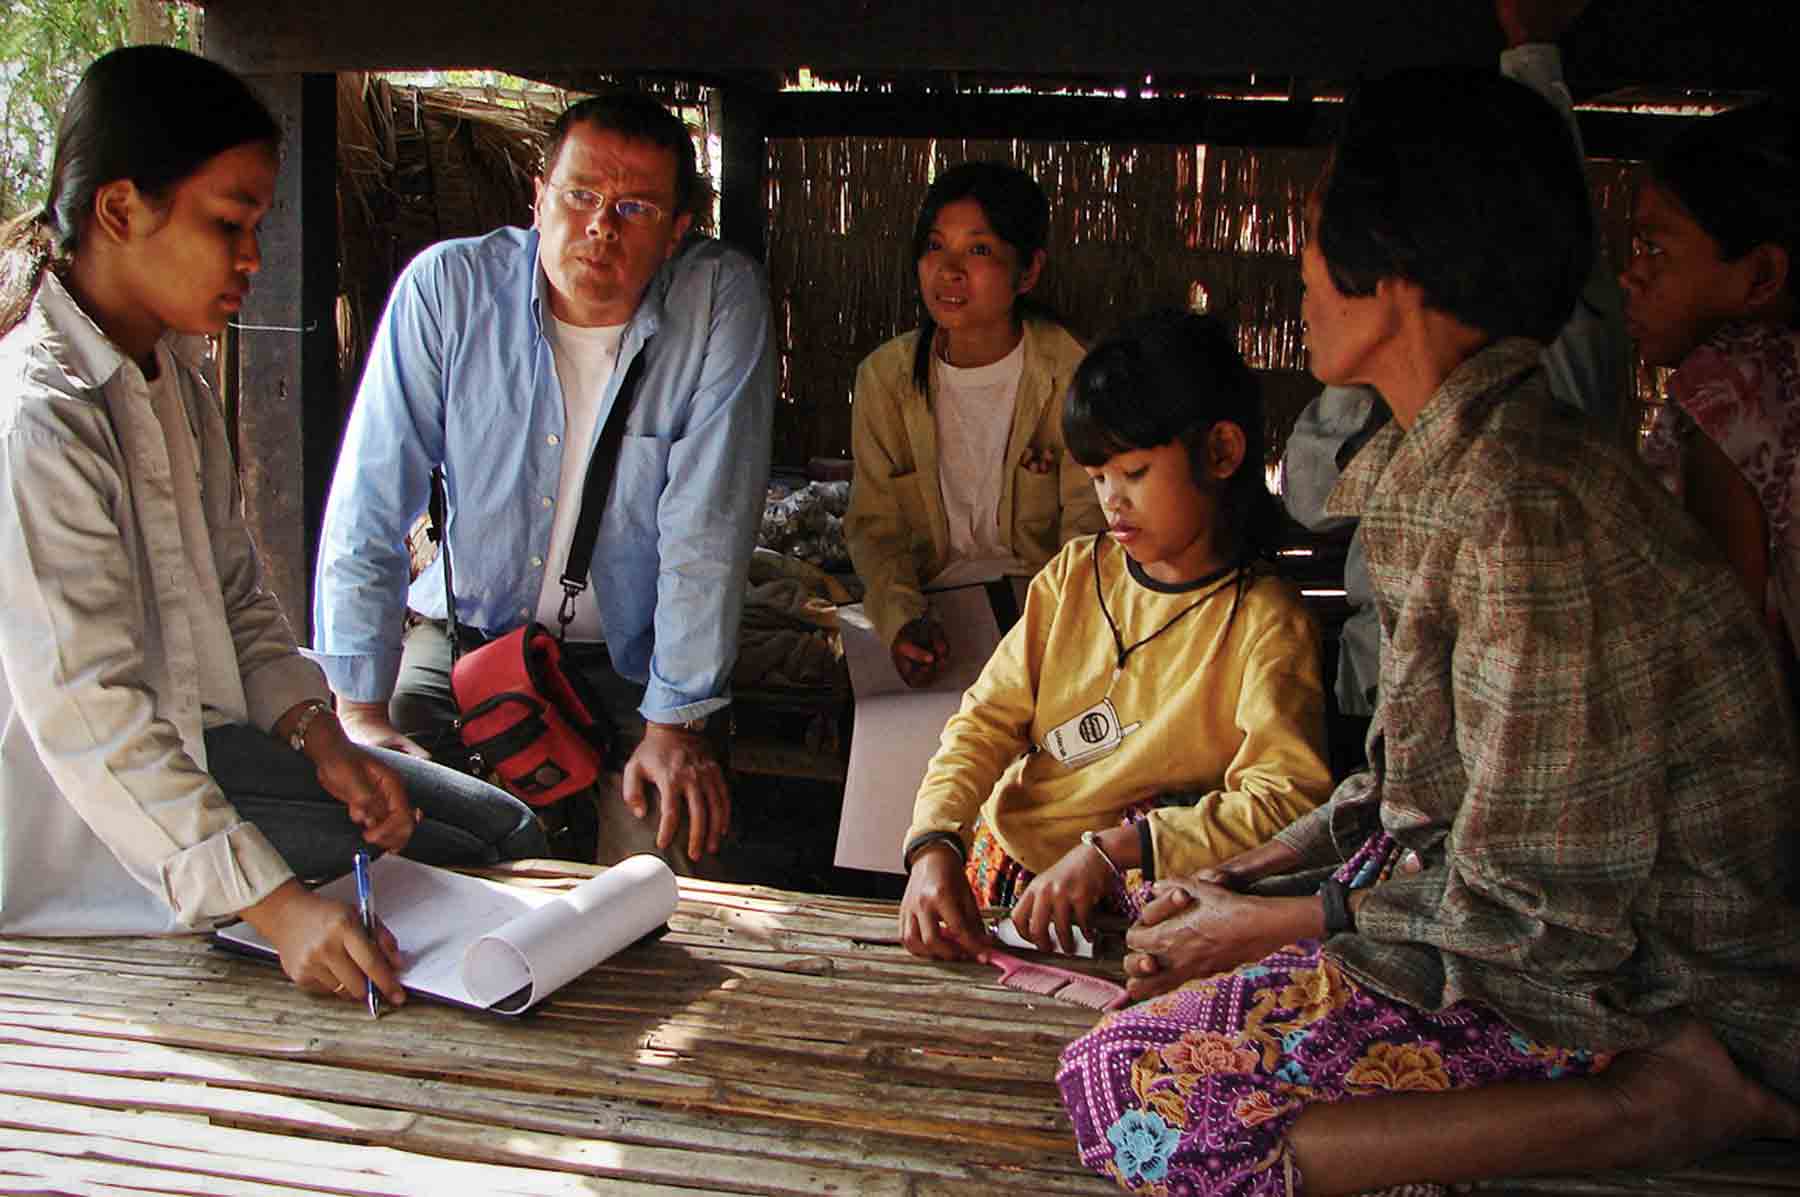 Ort und humanitäre Intervention in einem Dorf in Kambodscha für arme Kinder, die unter Misshandlung, sexuellem Missbrauch leiden oder von ihren Eltern verlassen und den Menschen im Dorf anvertraut wurden.